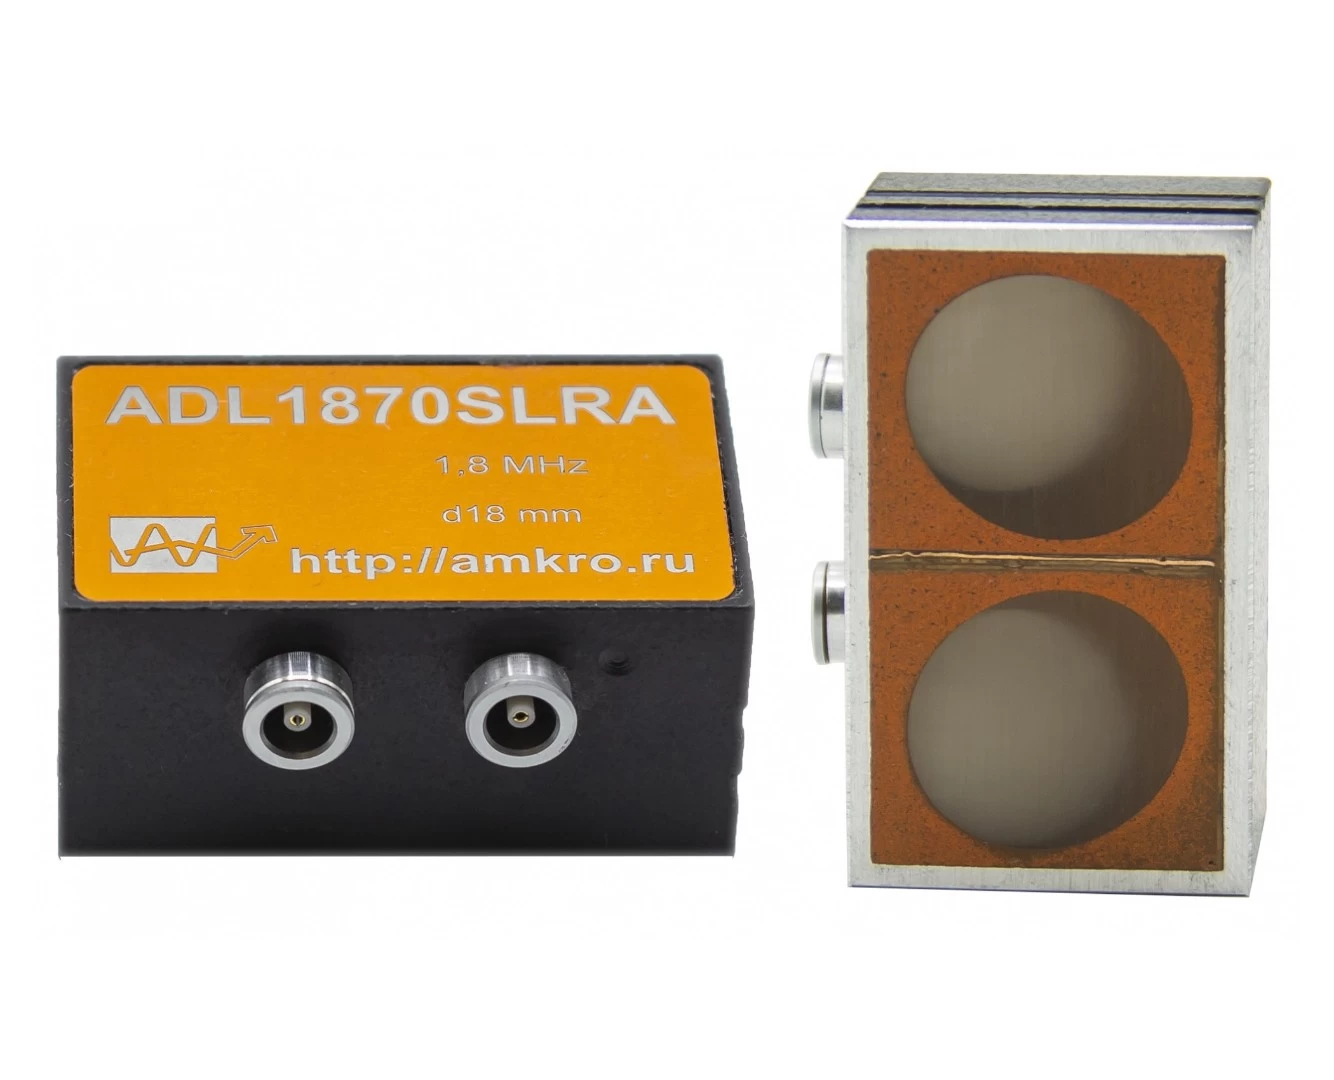 ADL1870SLRA (аналог ИЦ-70) наклонный р/с преобразователь 1,8 МГц - 1